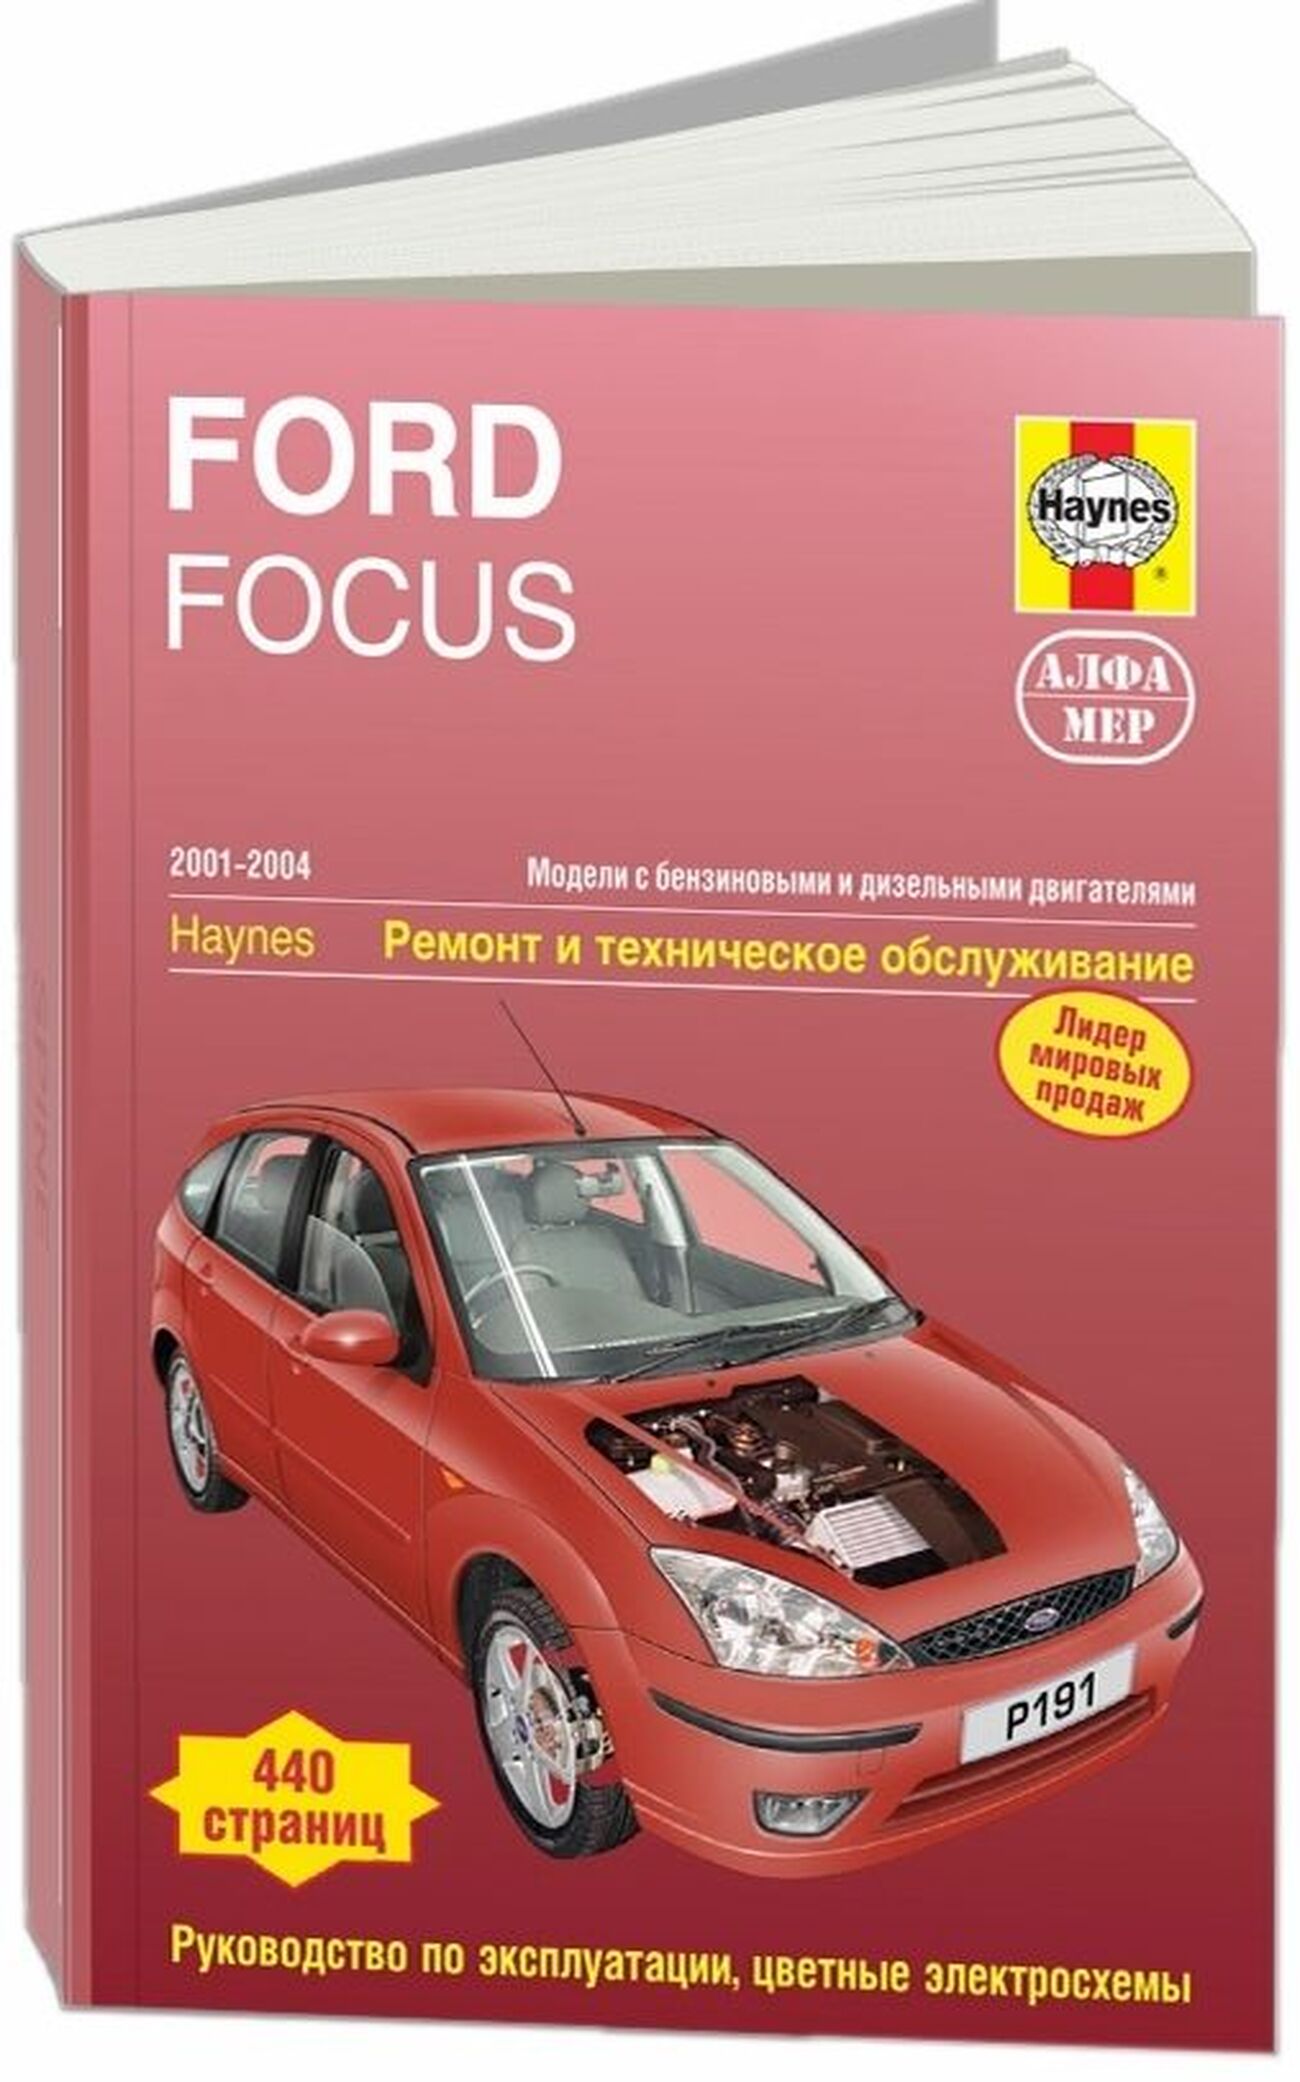 Книга: FORD FOCUS (б) 2001-2004 г.в., рем., экспл., то | Алфамер Паблишинг